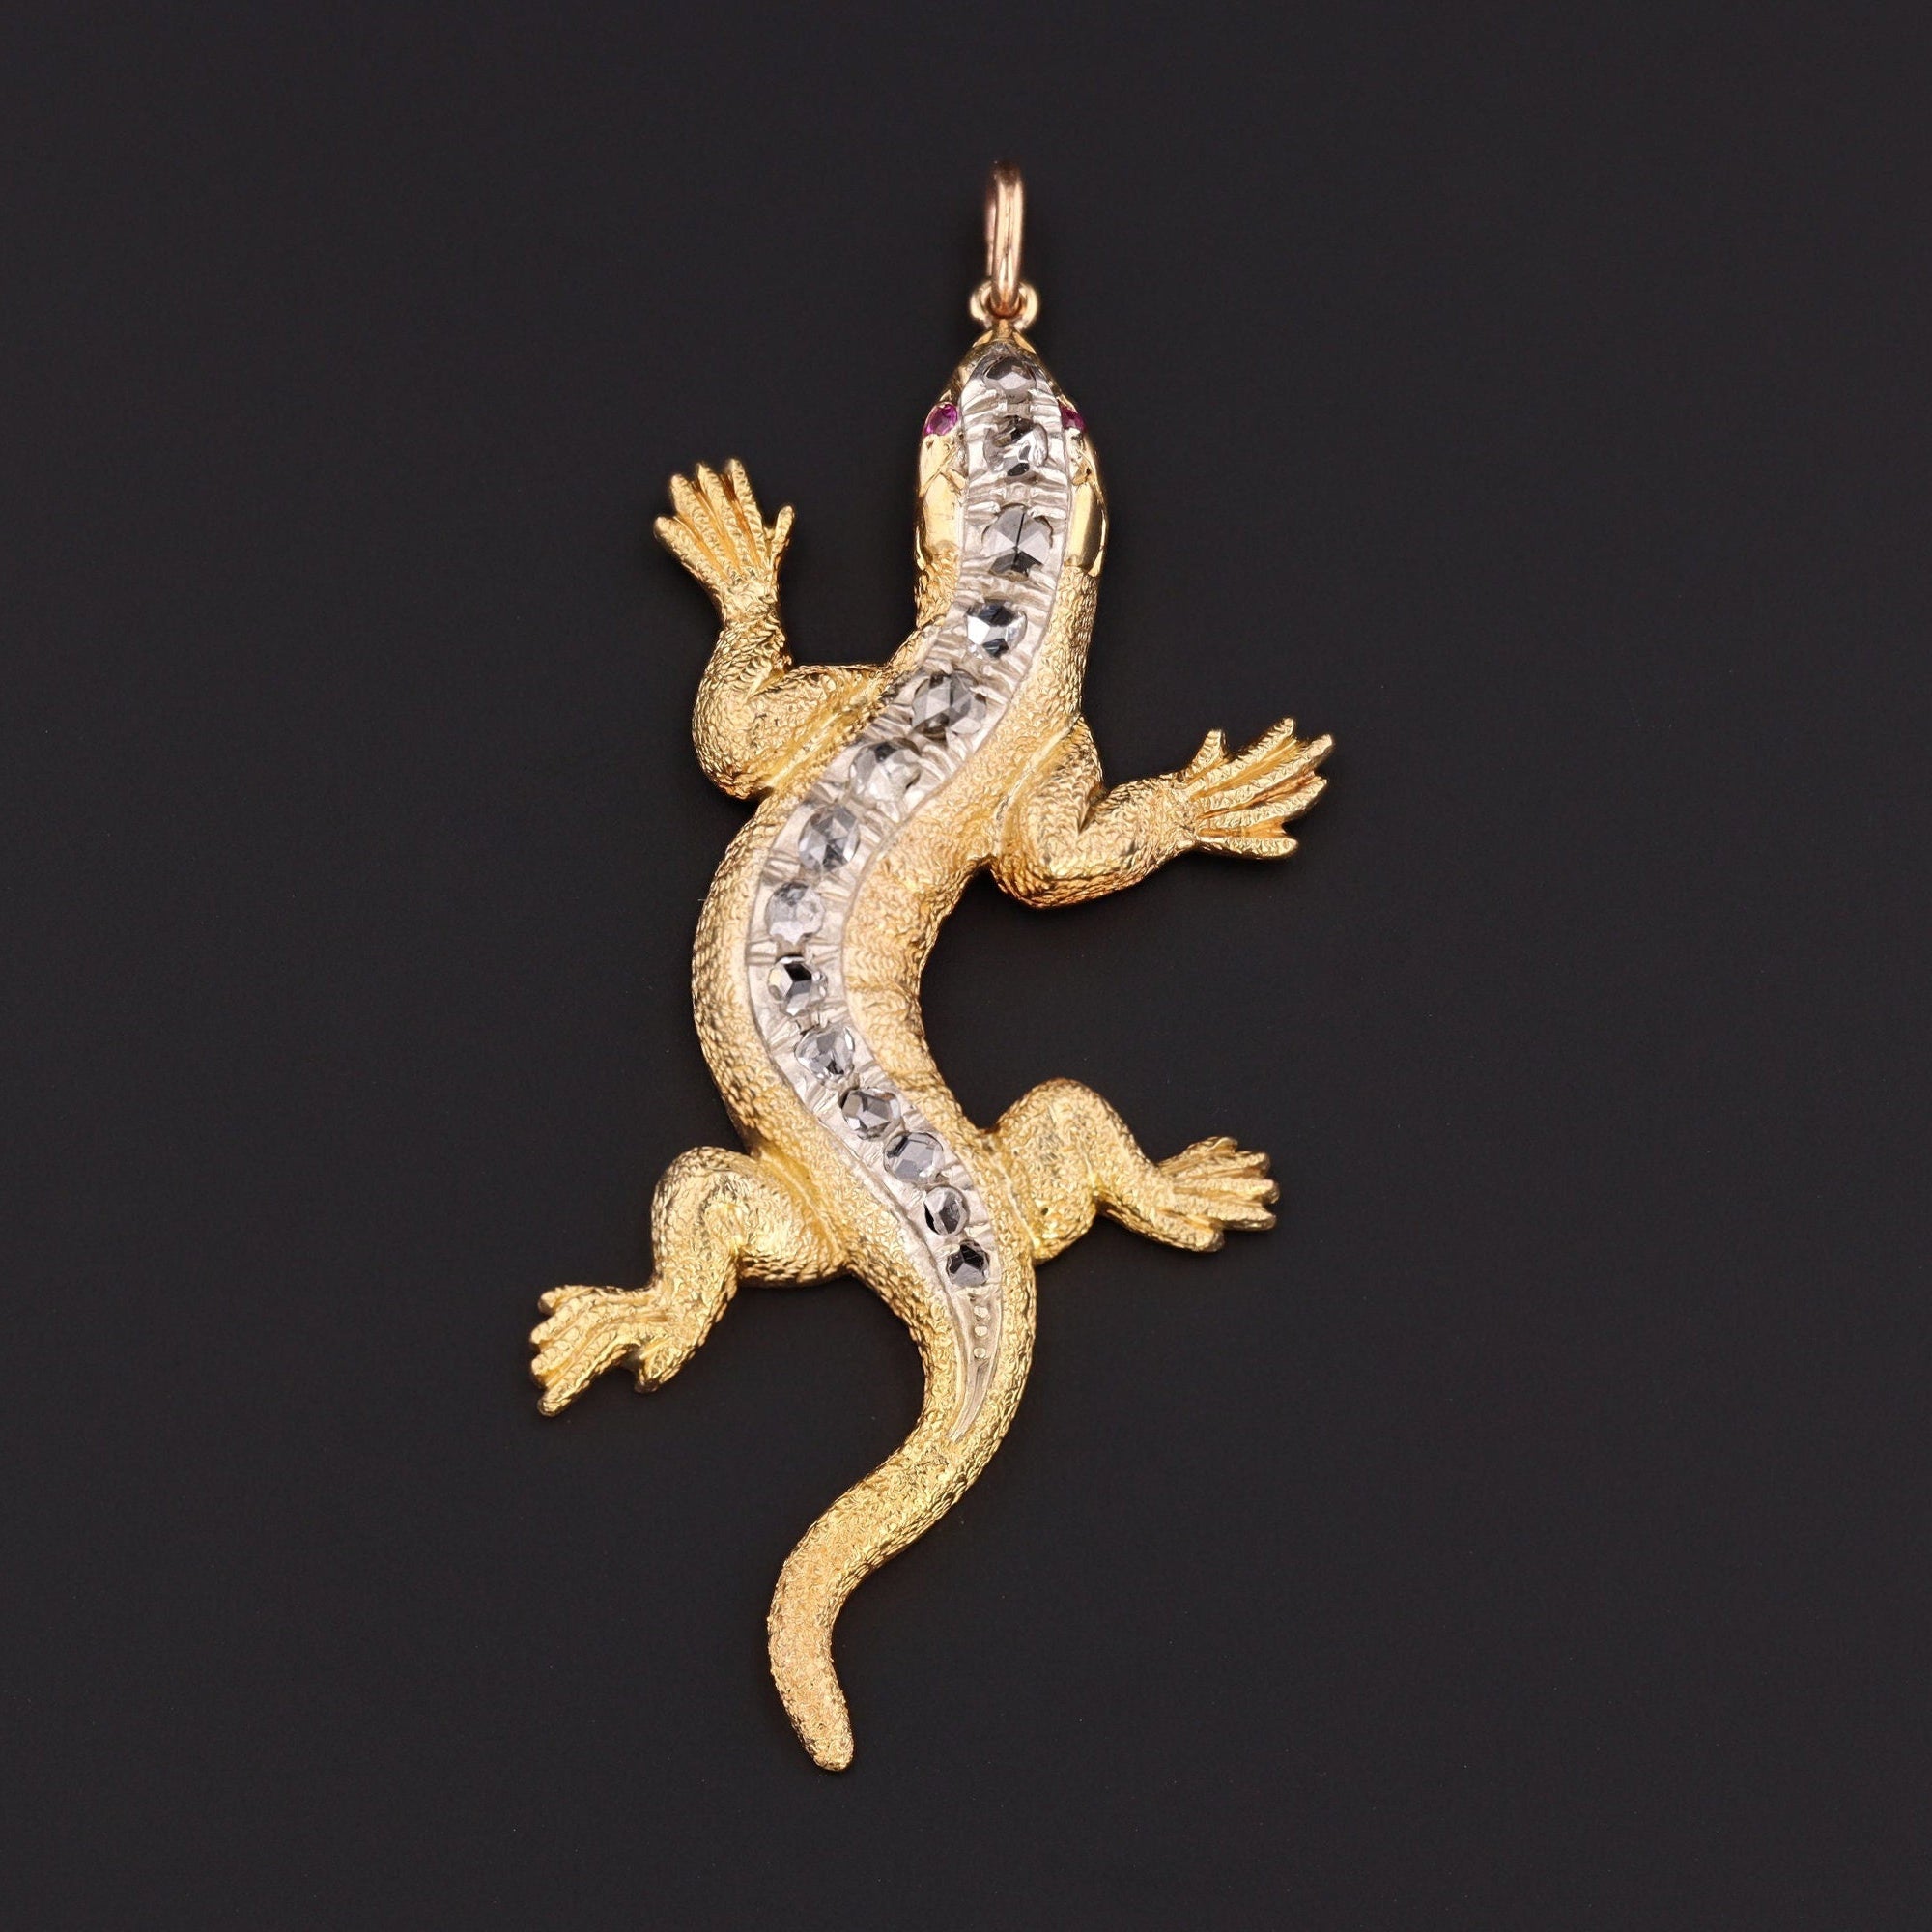 Lizard Pendant | Antique Lizard Pendant 